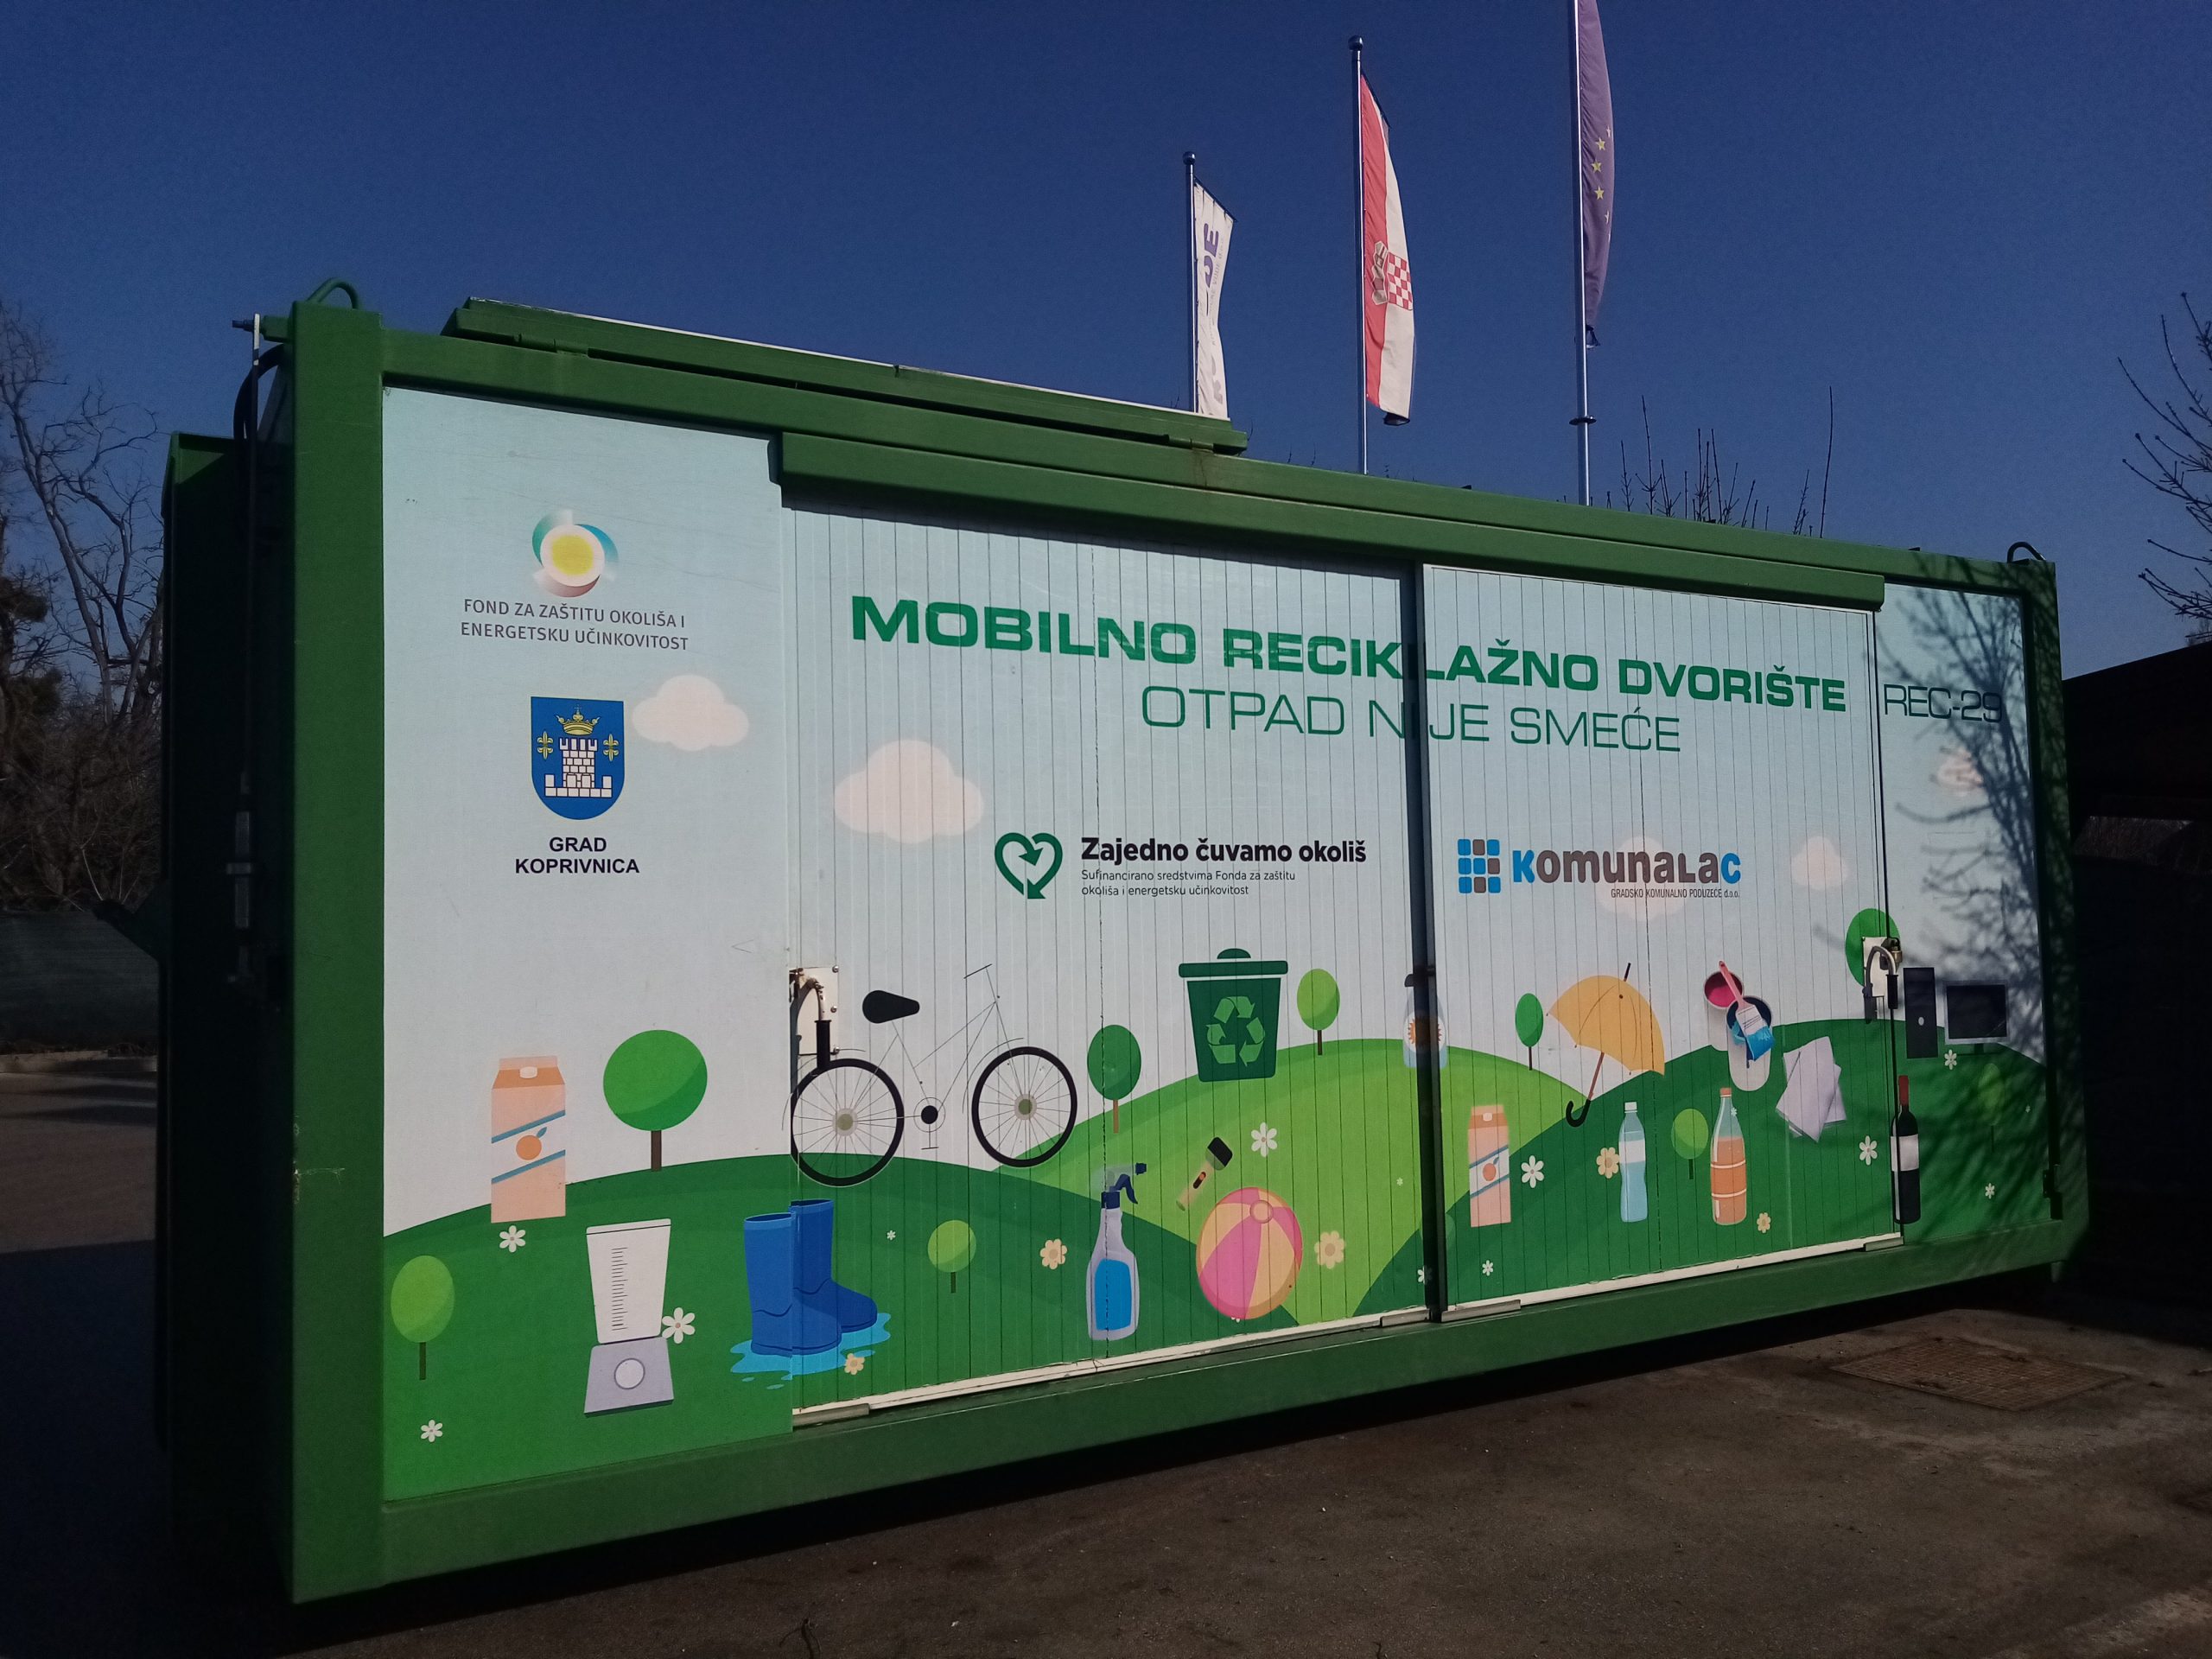 Mobilno reciklažno dvorište u četvrtak, 5. svibnja, nalazit će se u Starigradu kod društvenog doma